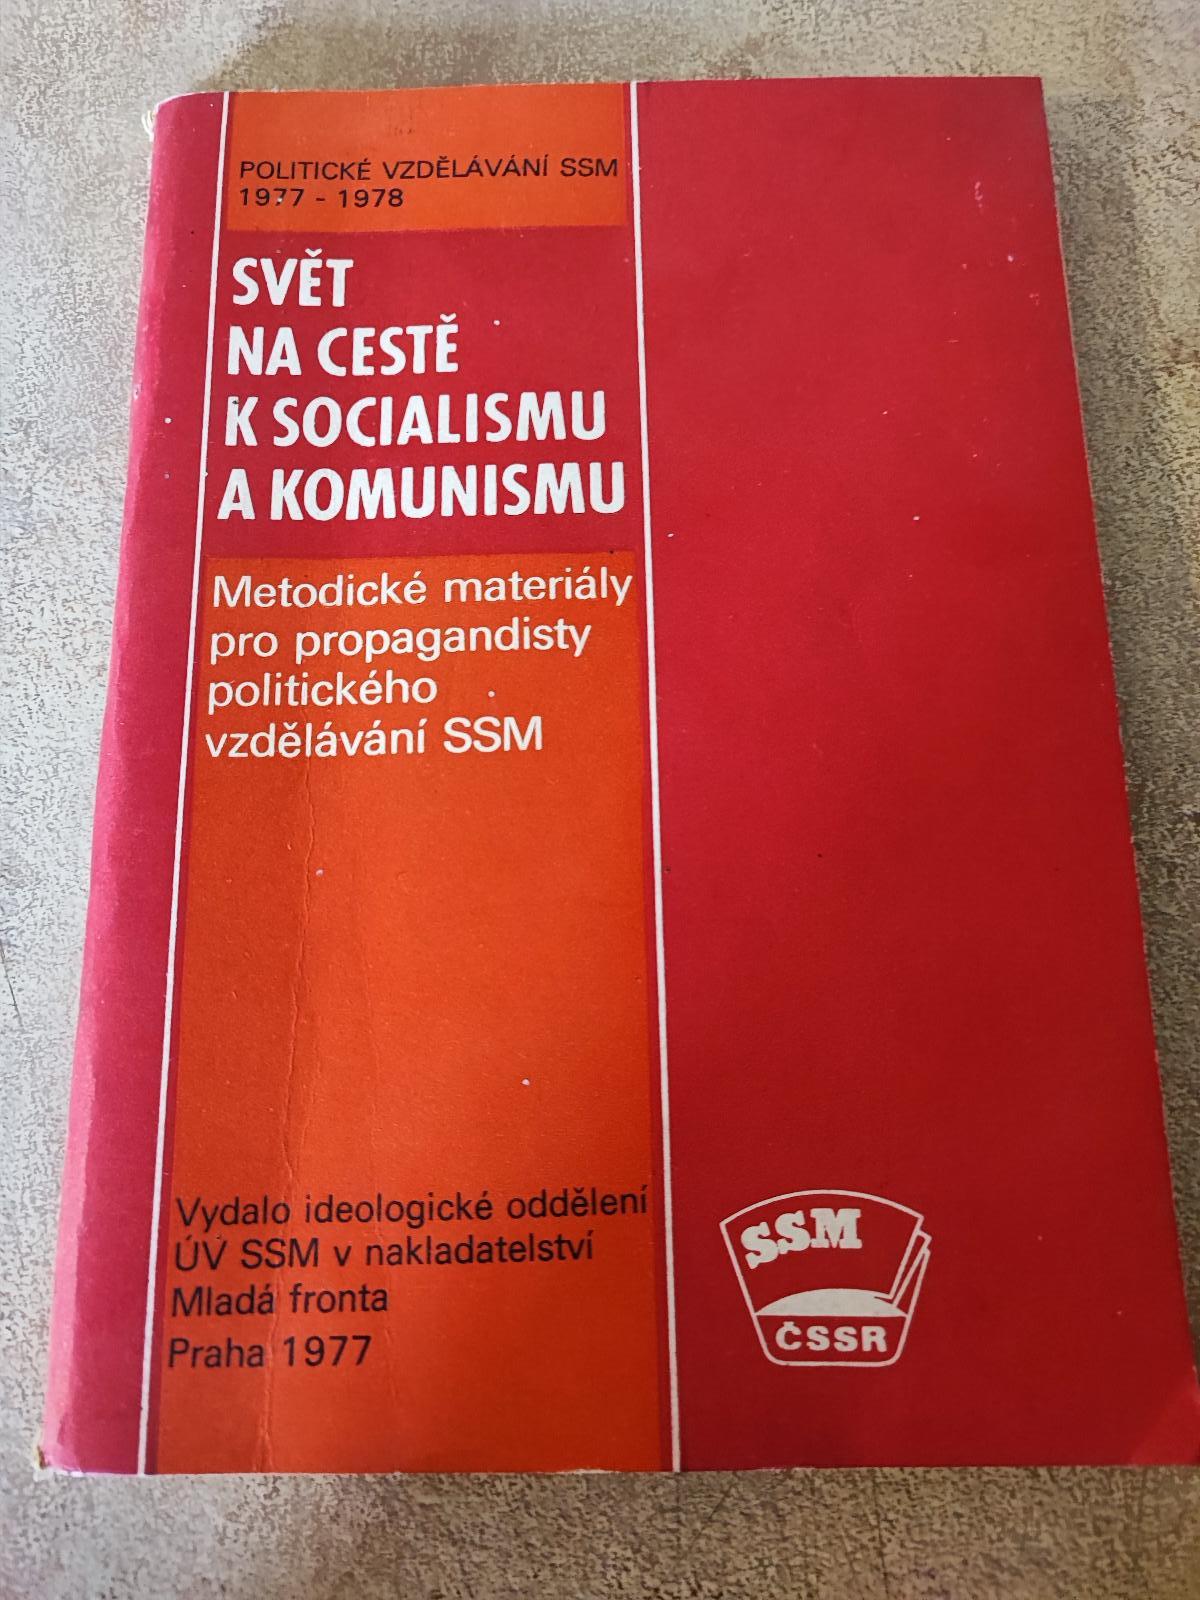 Politické vzdelávanie SSM 1977-1978, Svet na ceste k soc. a kom. - Knihy